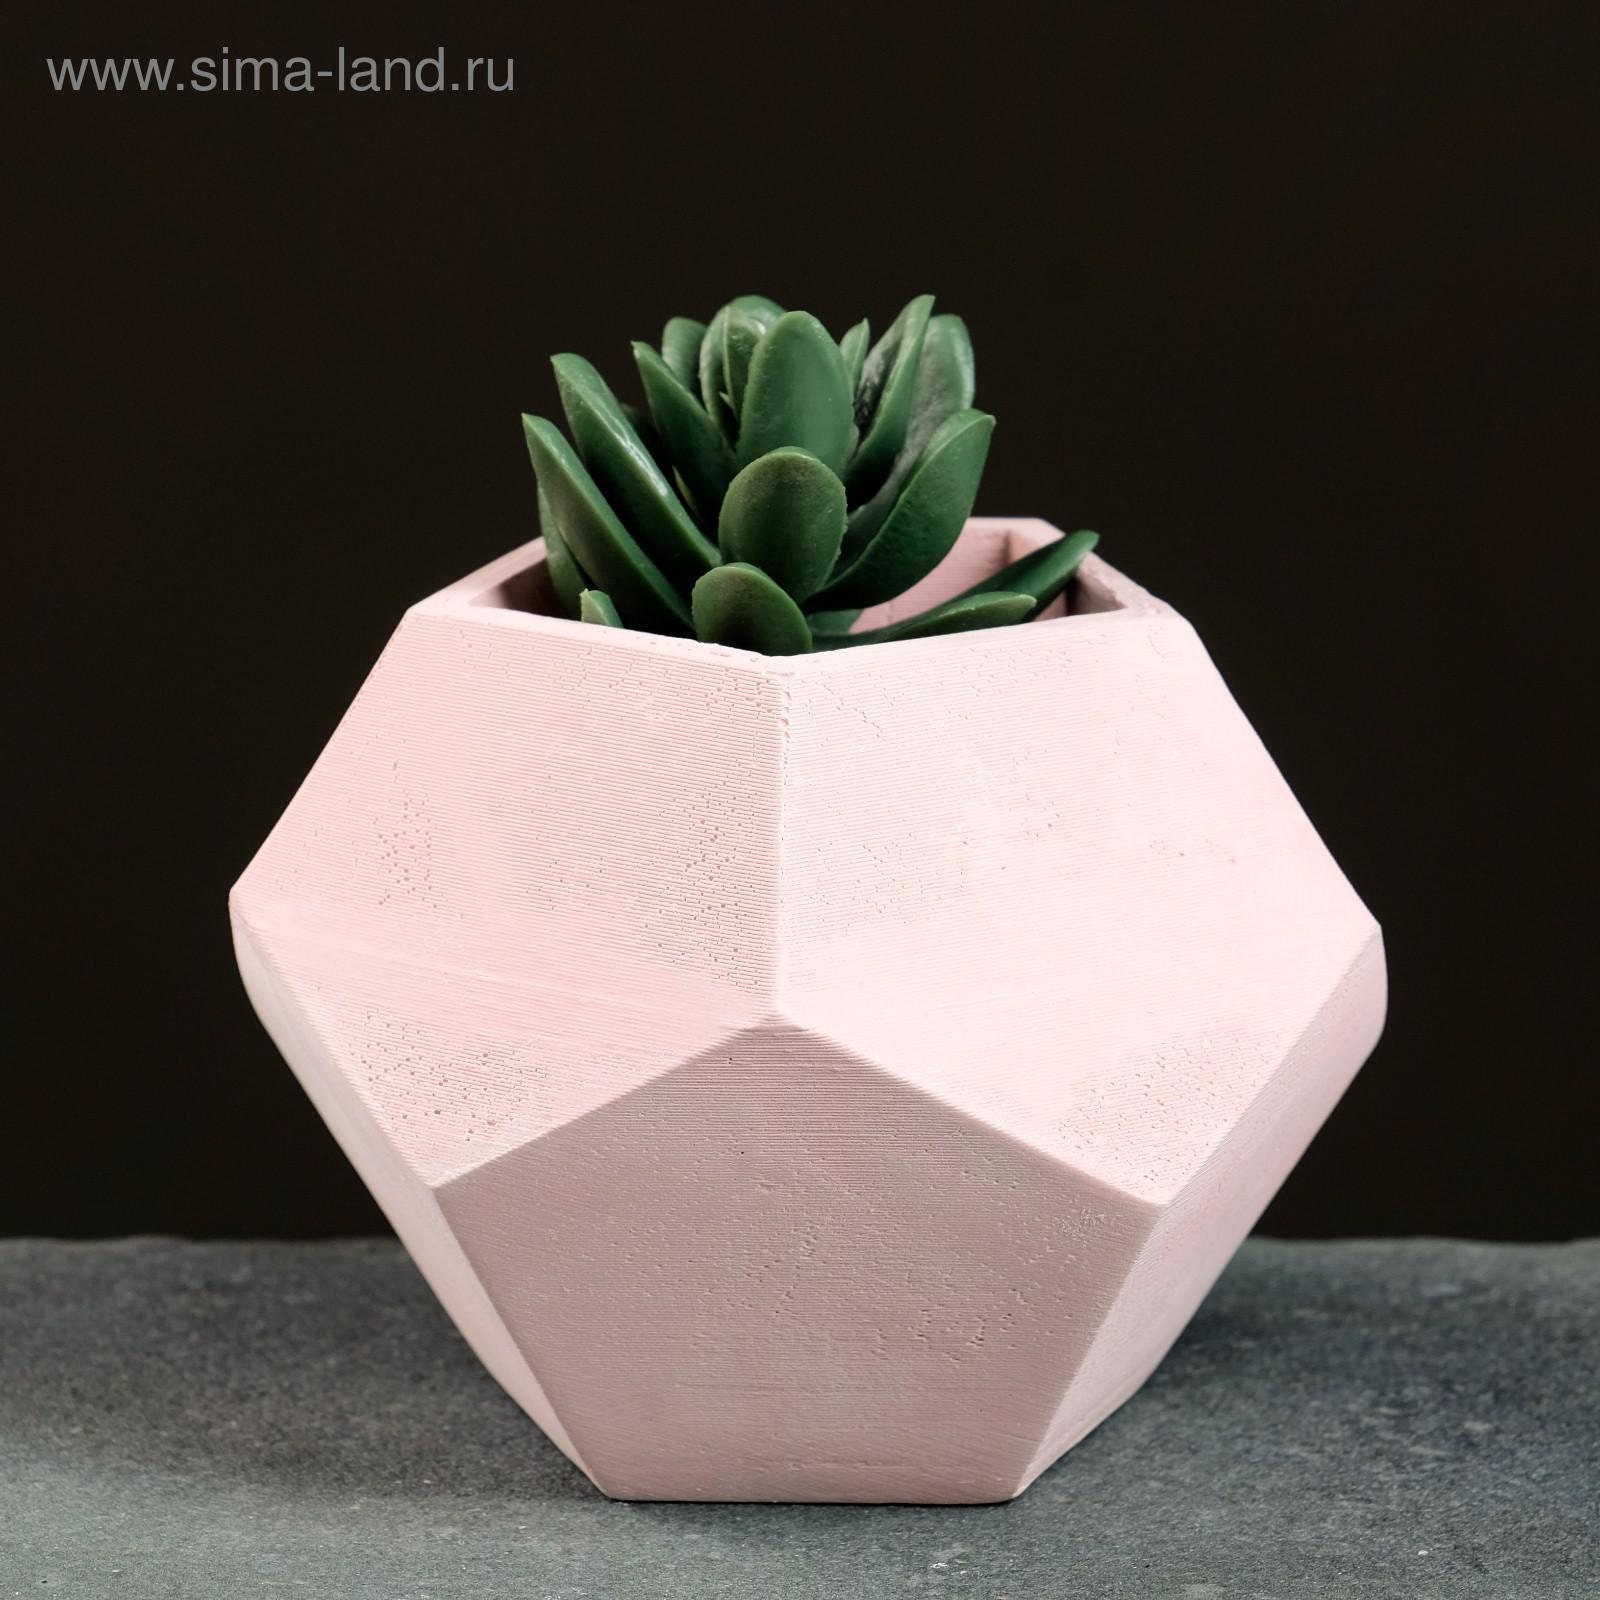 Concrete planter or mold / Concrete ceramic planter silicone | Etsy